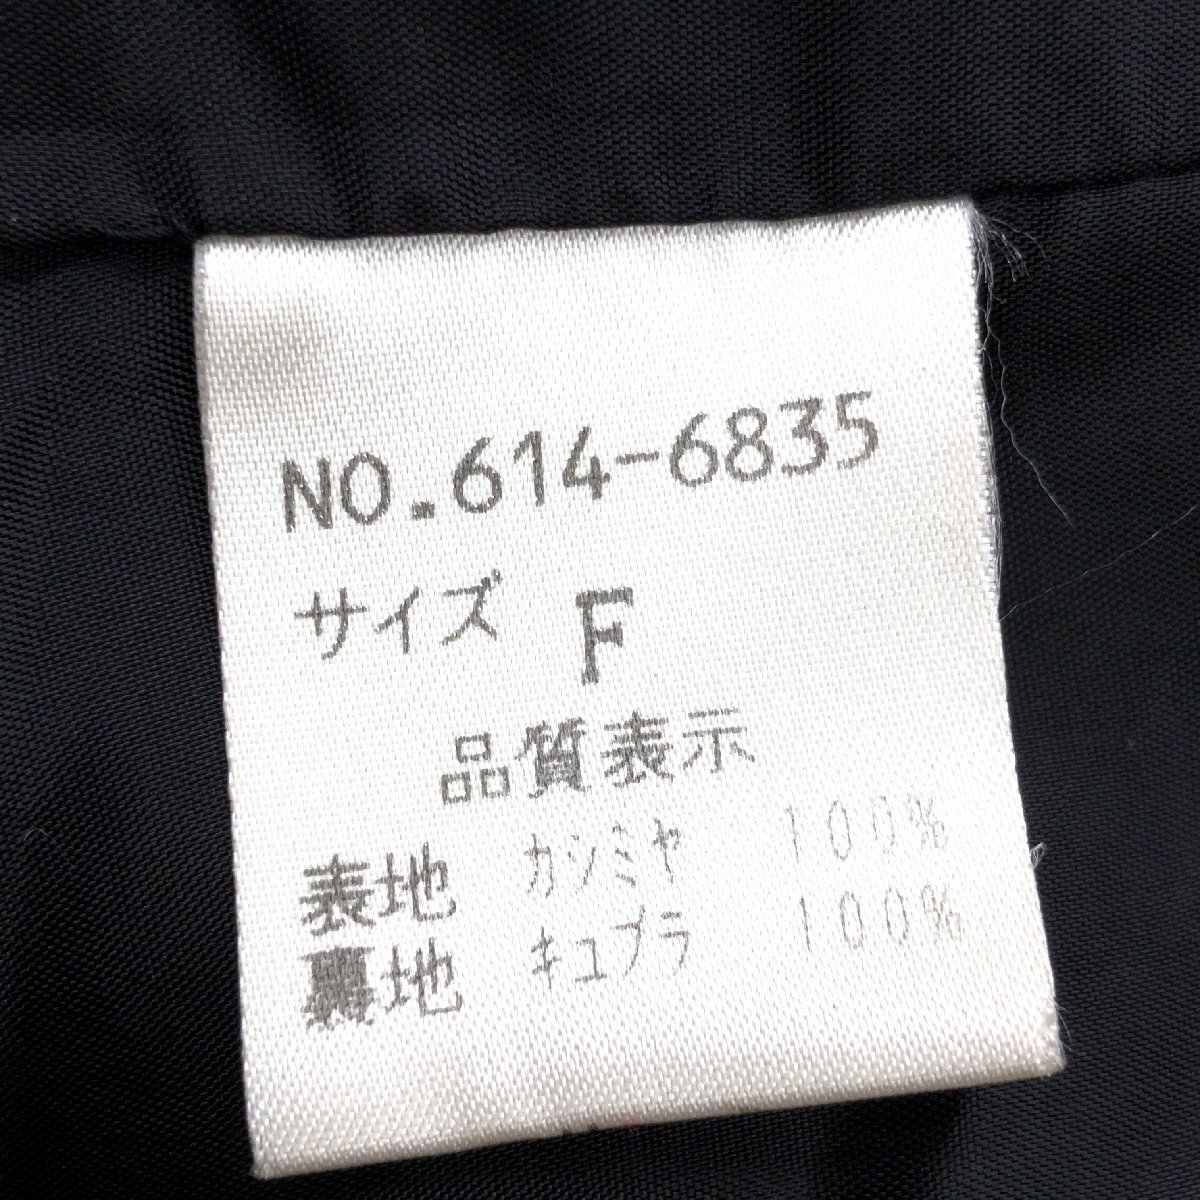 ◆mallage マロージュ 高級カシミヤ100% ロングコート F 黒 ブラック ウールコート カシミア 日本製 国内正規品 レディース 女性用 婦人_画像8